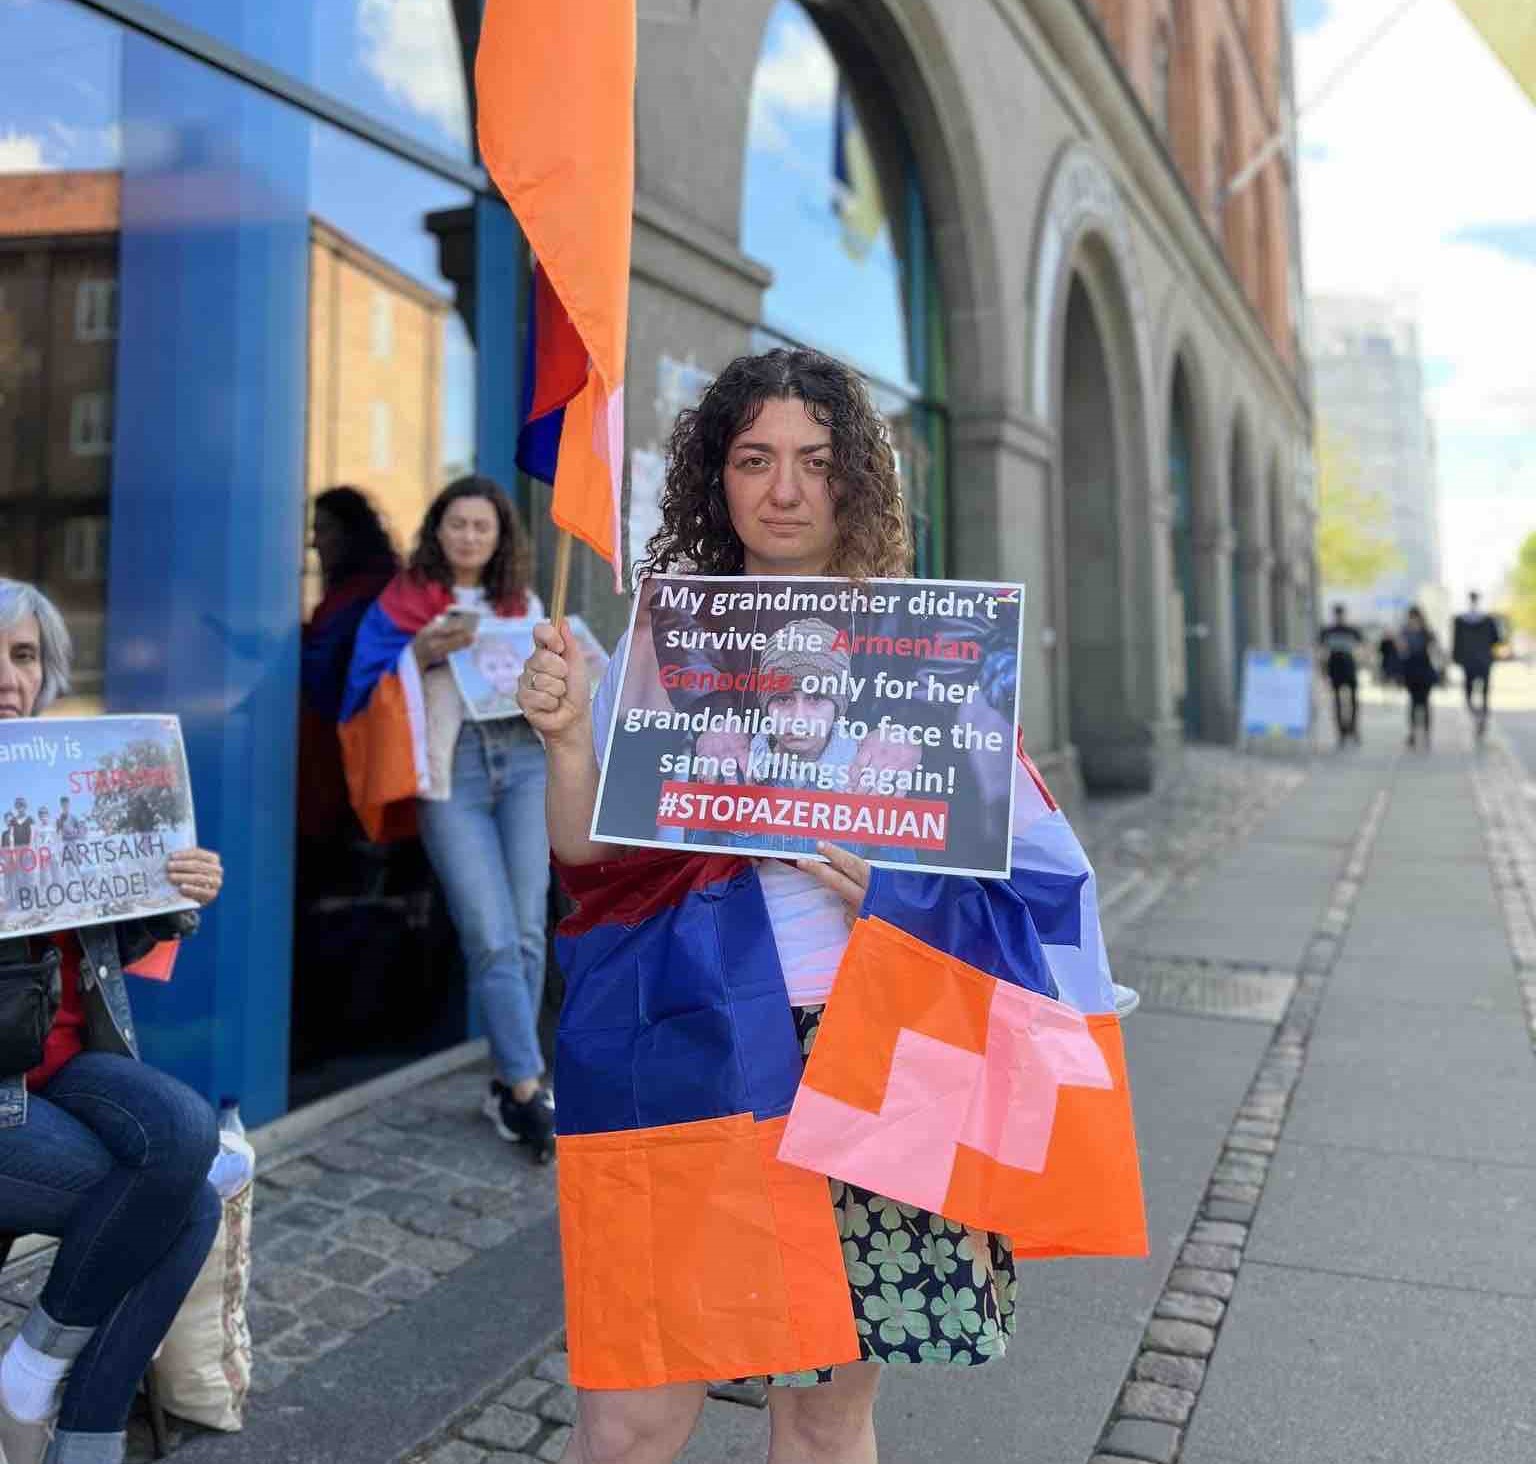 Հայ կանայք Կոպենհագենում միացել են Երևանում ՄԱԿ-ի գրասենյակի մոտ ընթացող կանանց հացադուլին՝ ի պաշտպանություն արցախահայությանը